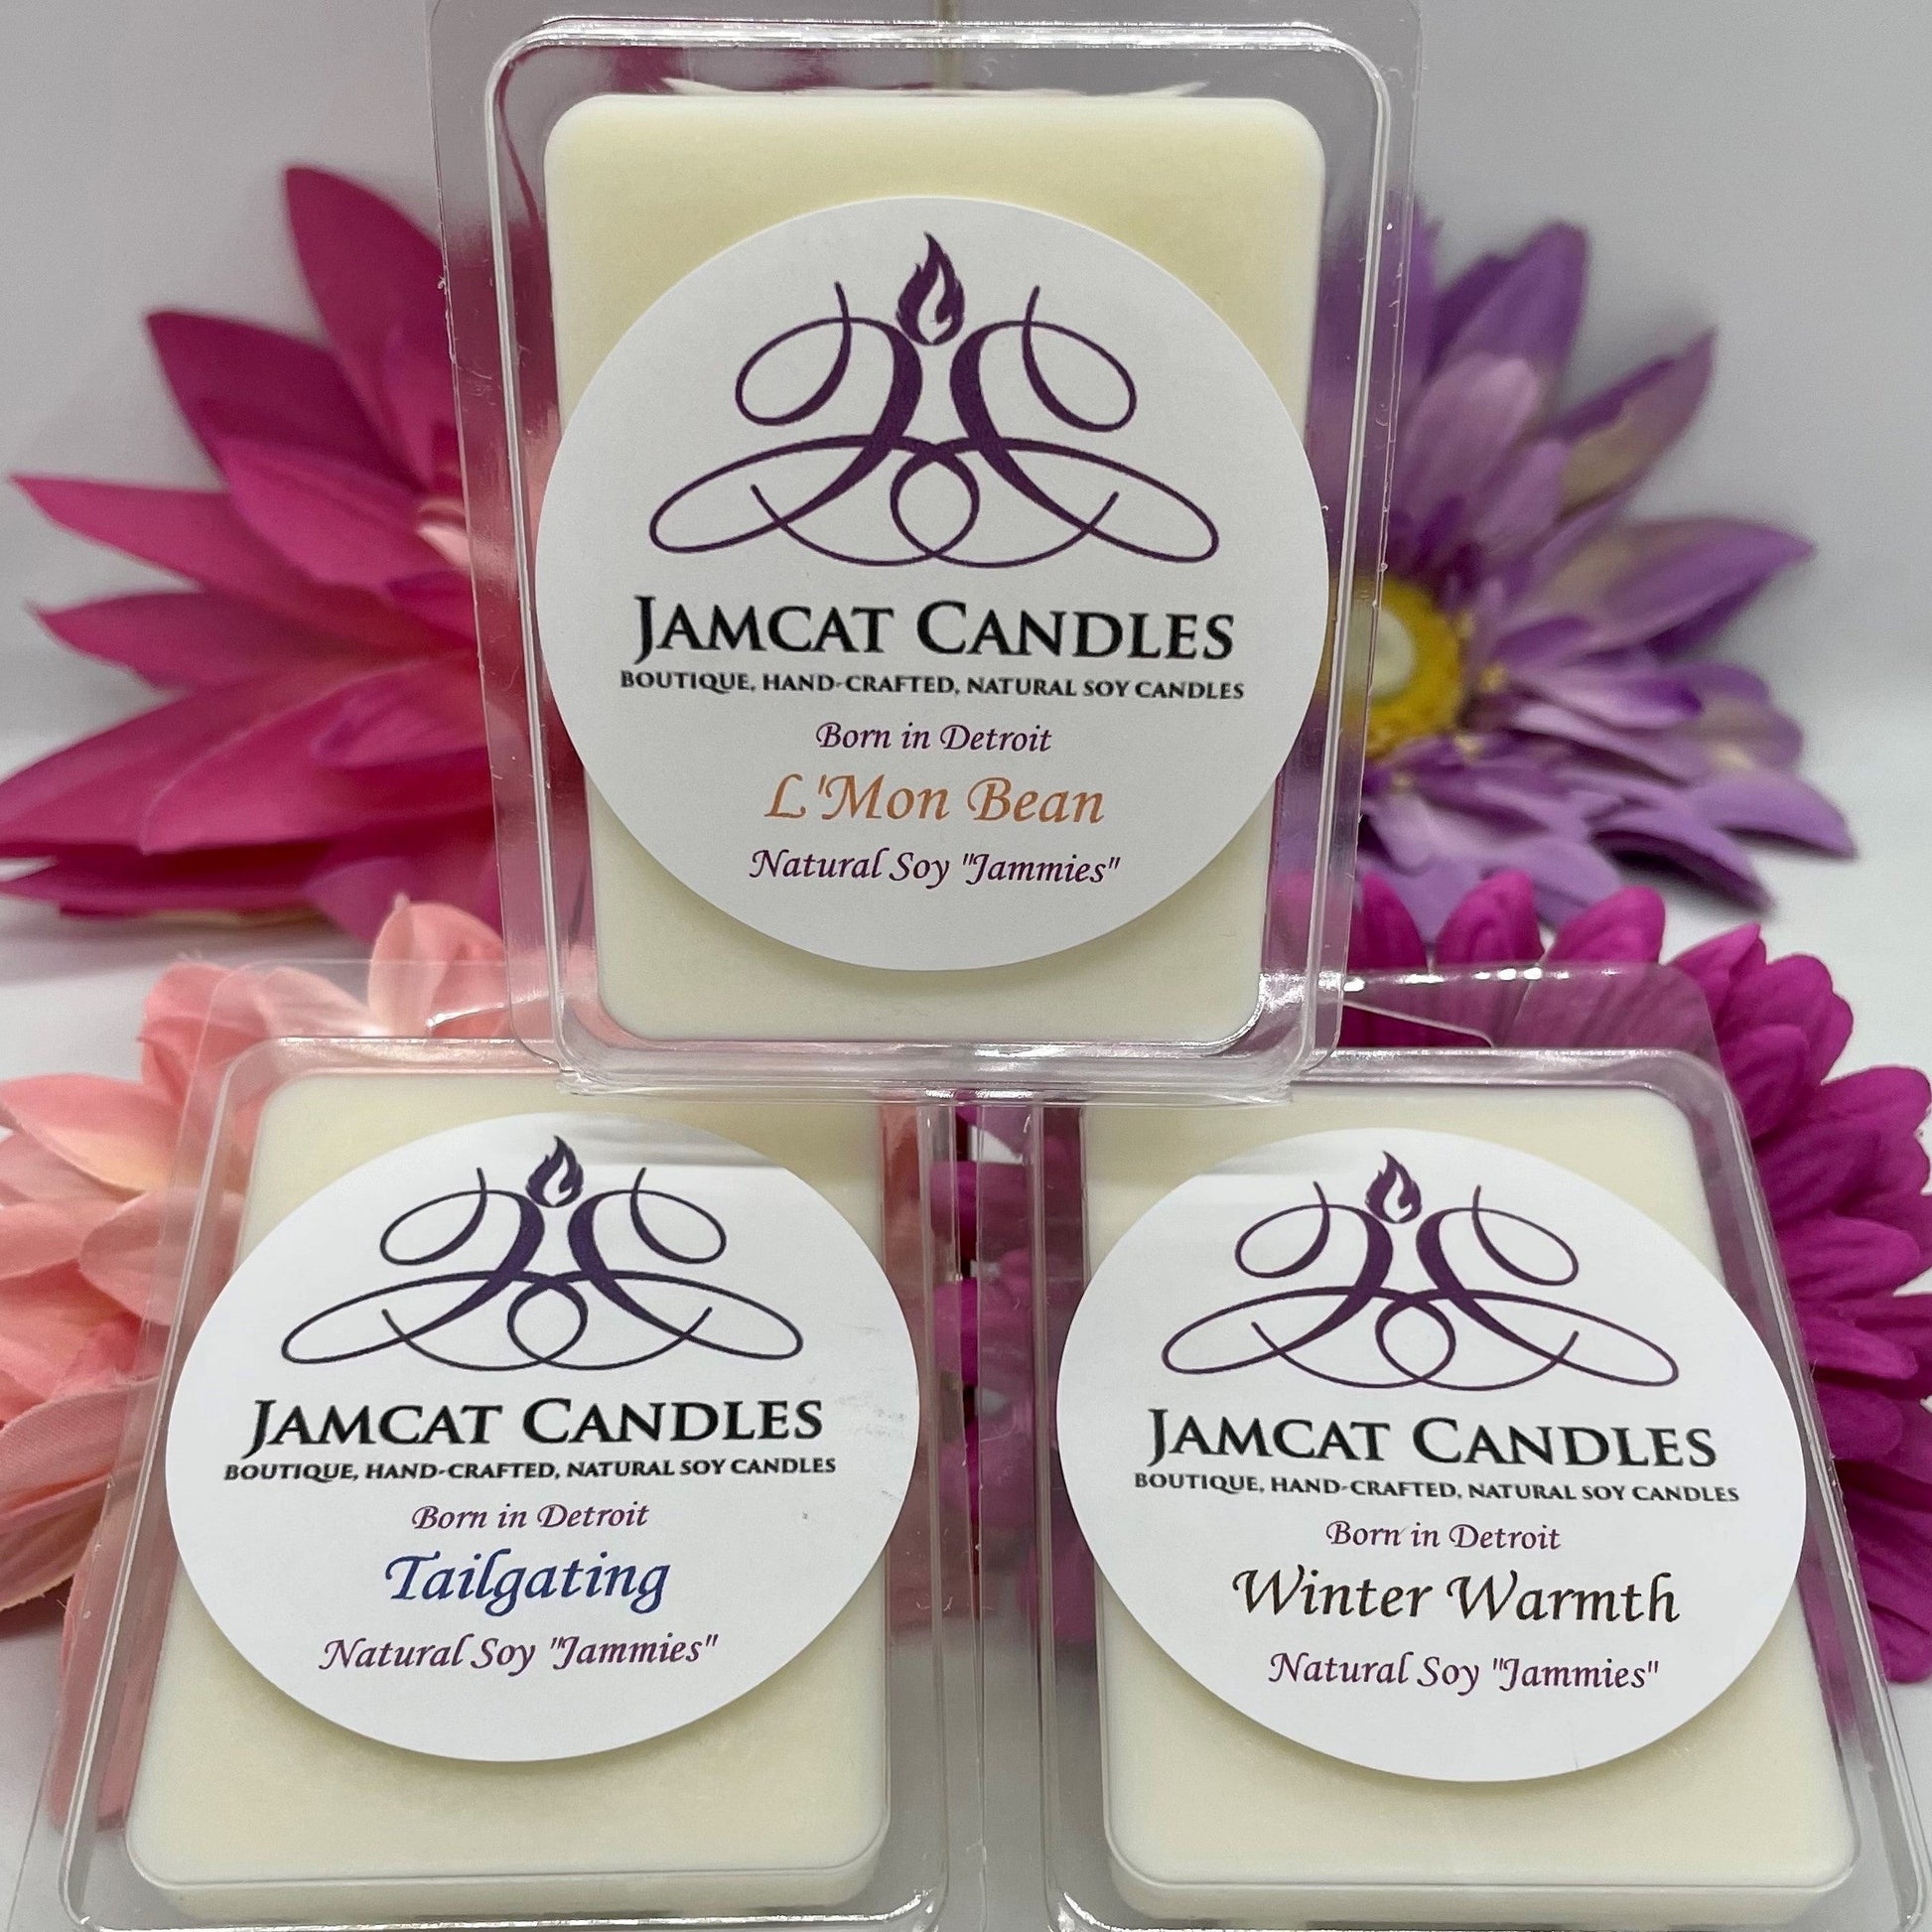 WAX JAMMIES - Jamcat Candles